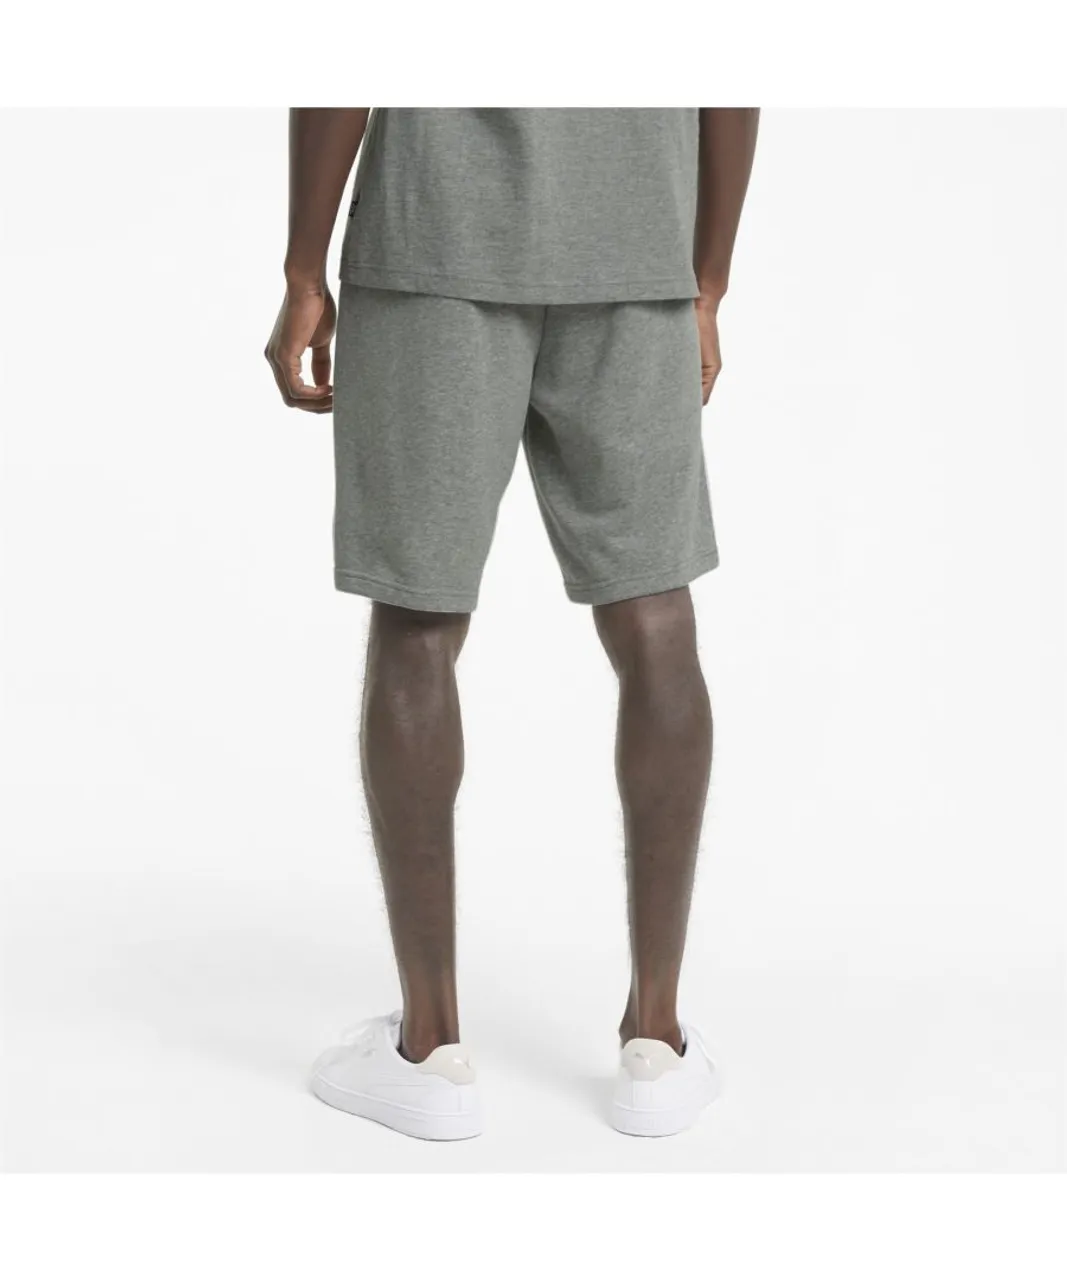 Puma Mens Essentials Shorts - Grey Cotton